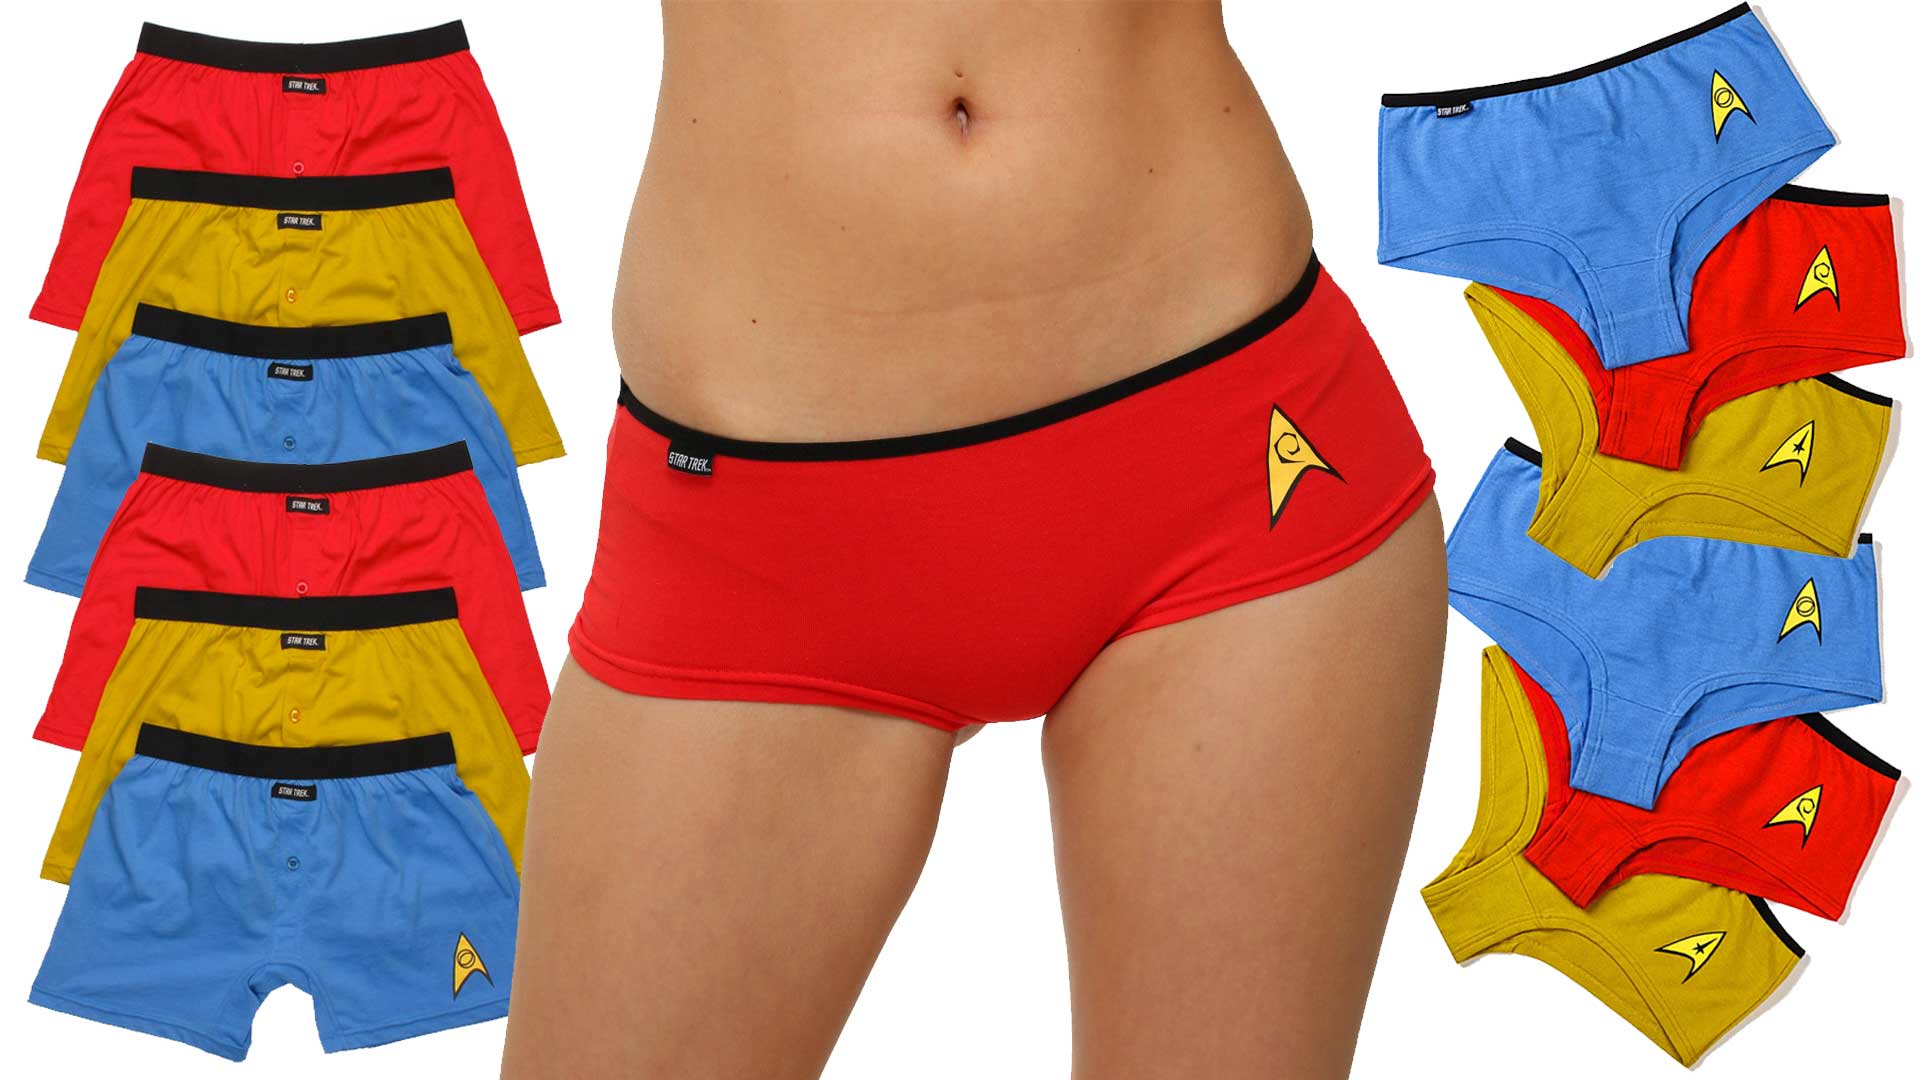 Stun Your Partner In The Bedroom With Sexy Star Trek Underwear